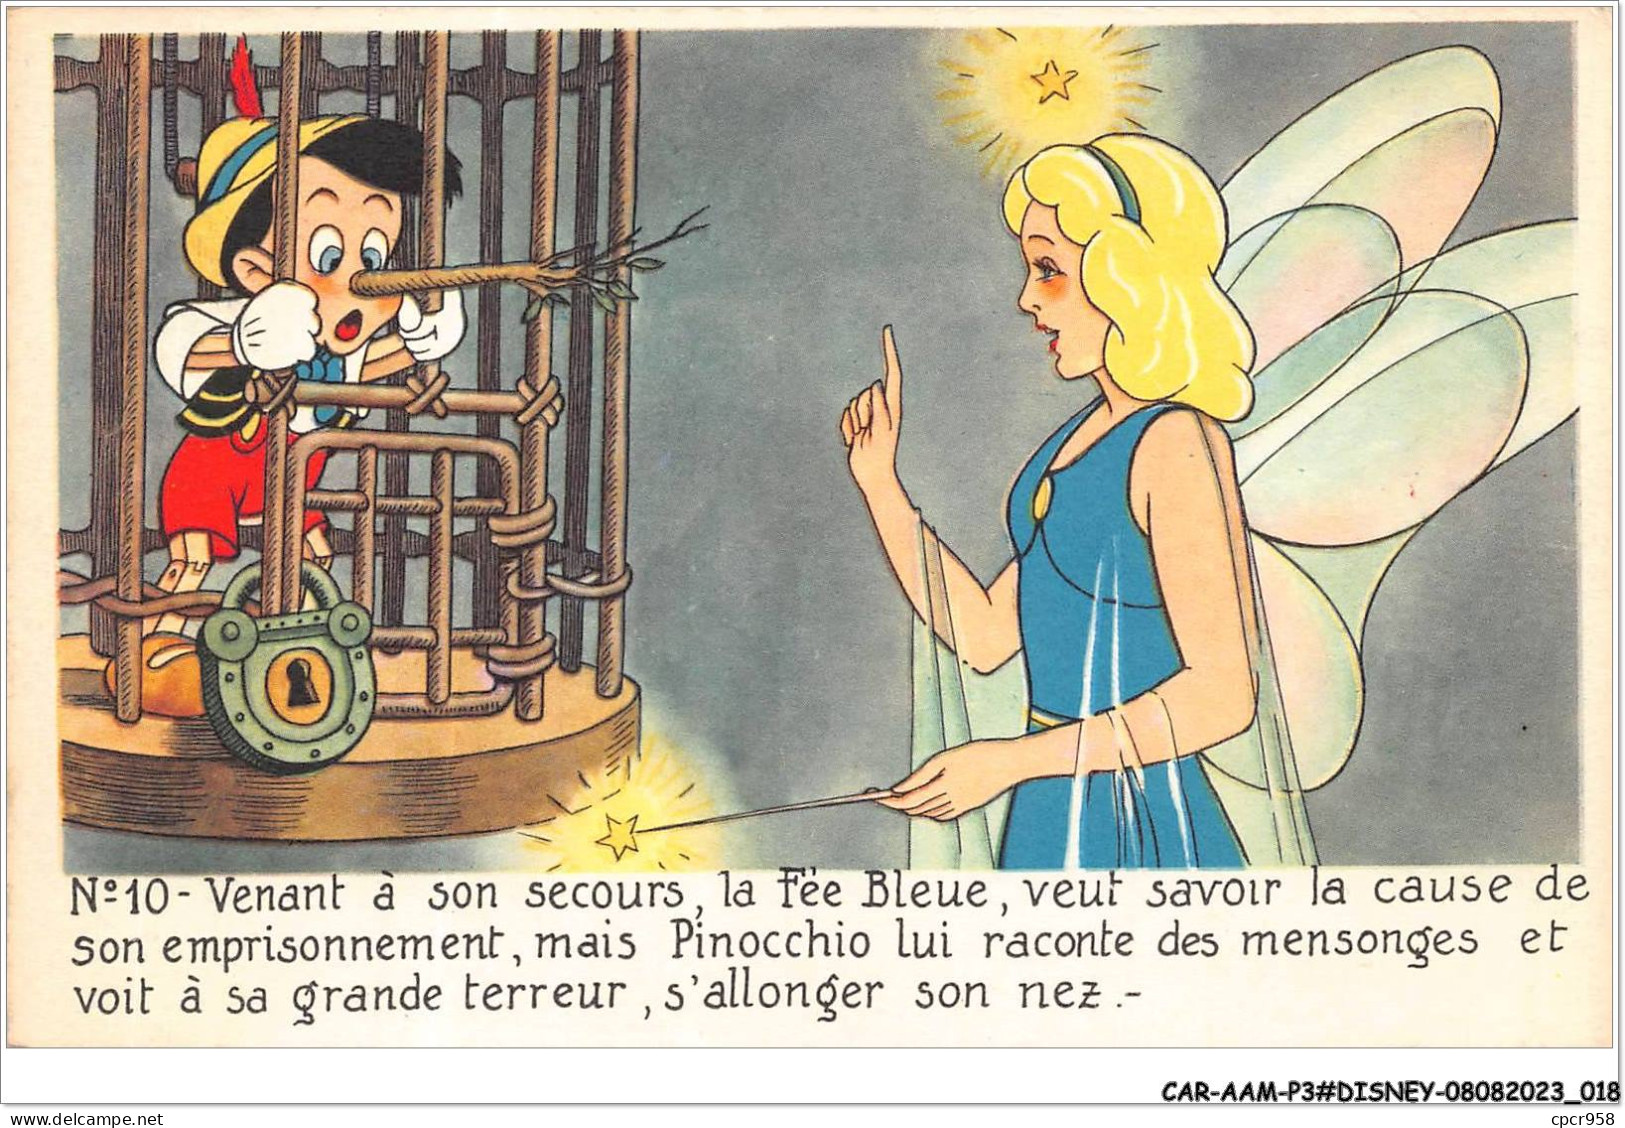 CAR-AAMP3-DISNEY-0219 - Pinocchio - Venant A Son Secours La Fée Bleue Veut Savoir La Cause De Son Emprisonnement - N°10 - Disneyland